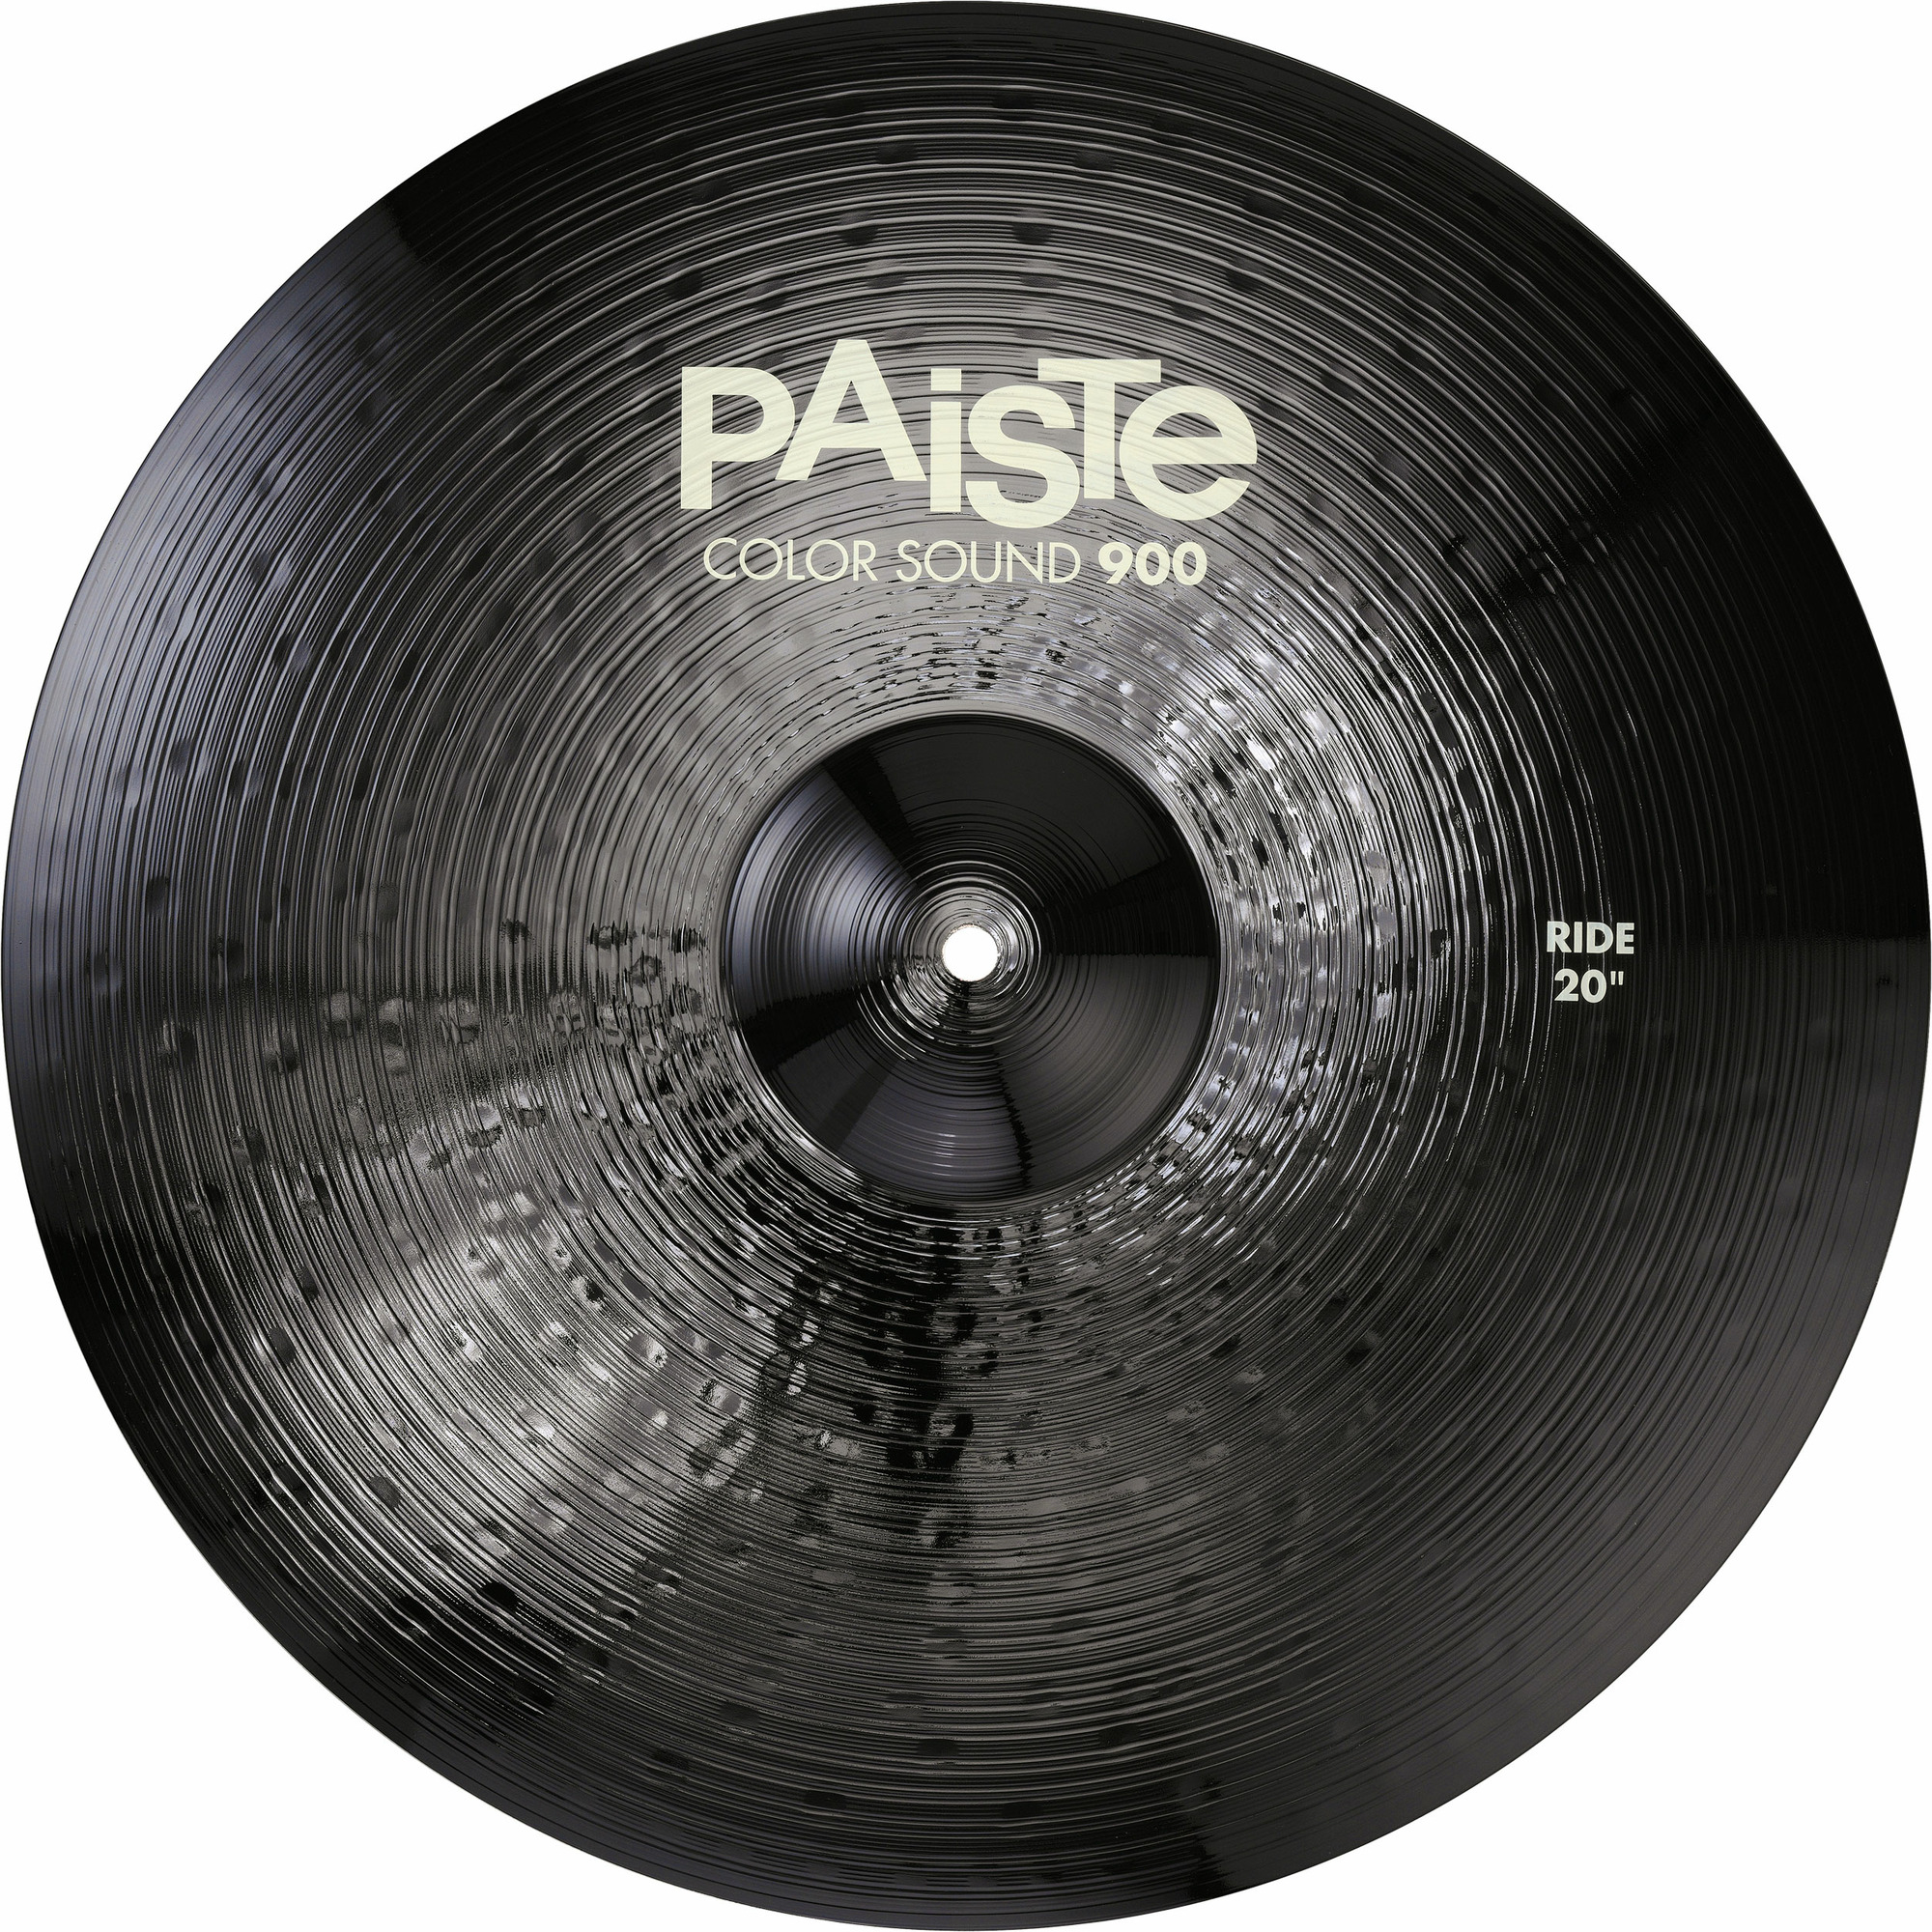 Тарелка для ударной установки Paiste 0001911620 Color Sound 900 Black Ride